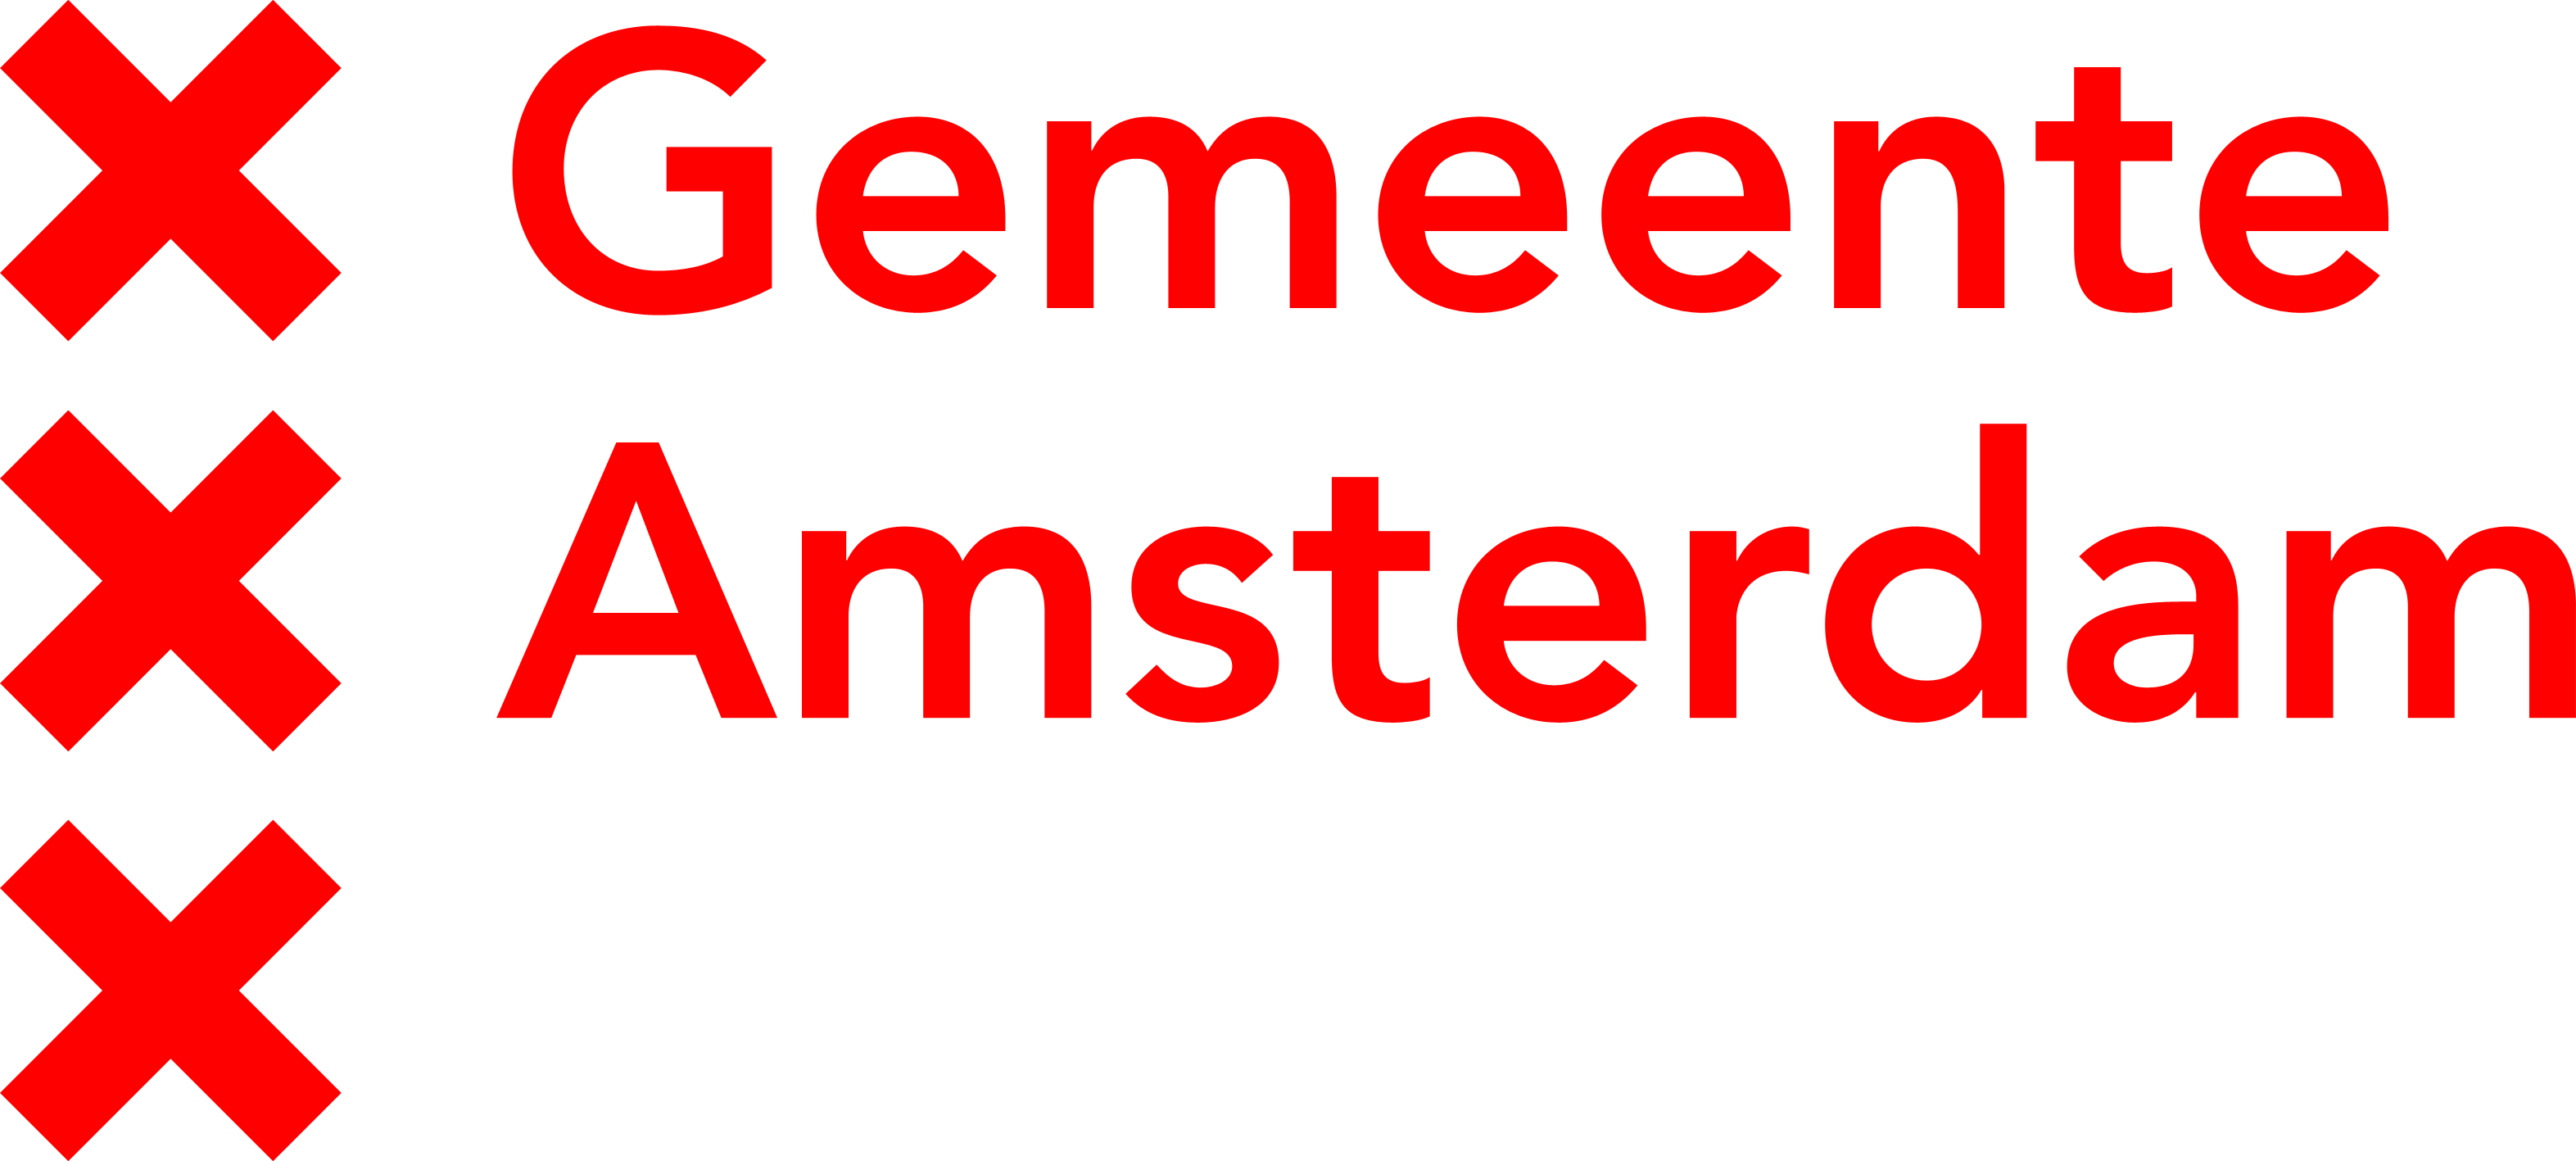 Digitale-vaardigheden-gemeente Amsterdam